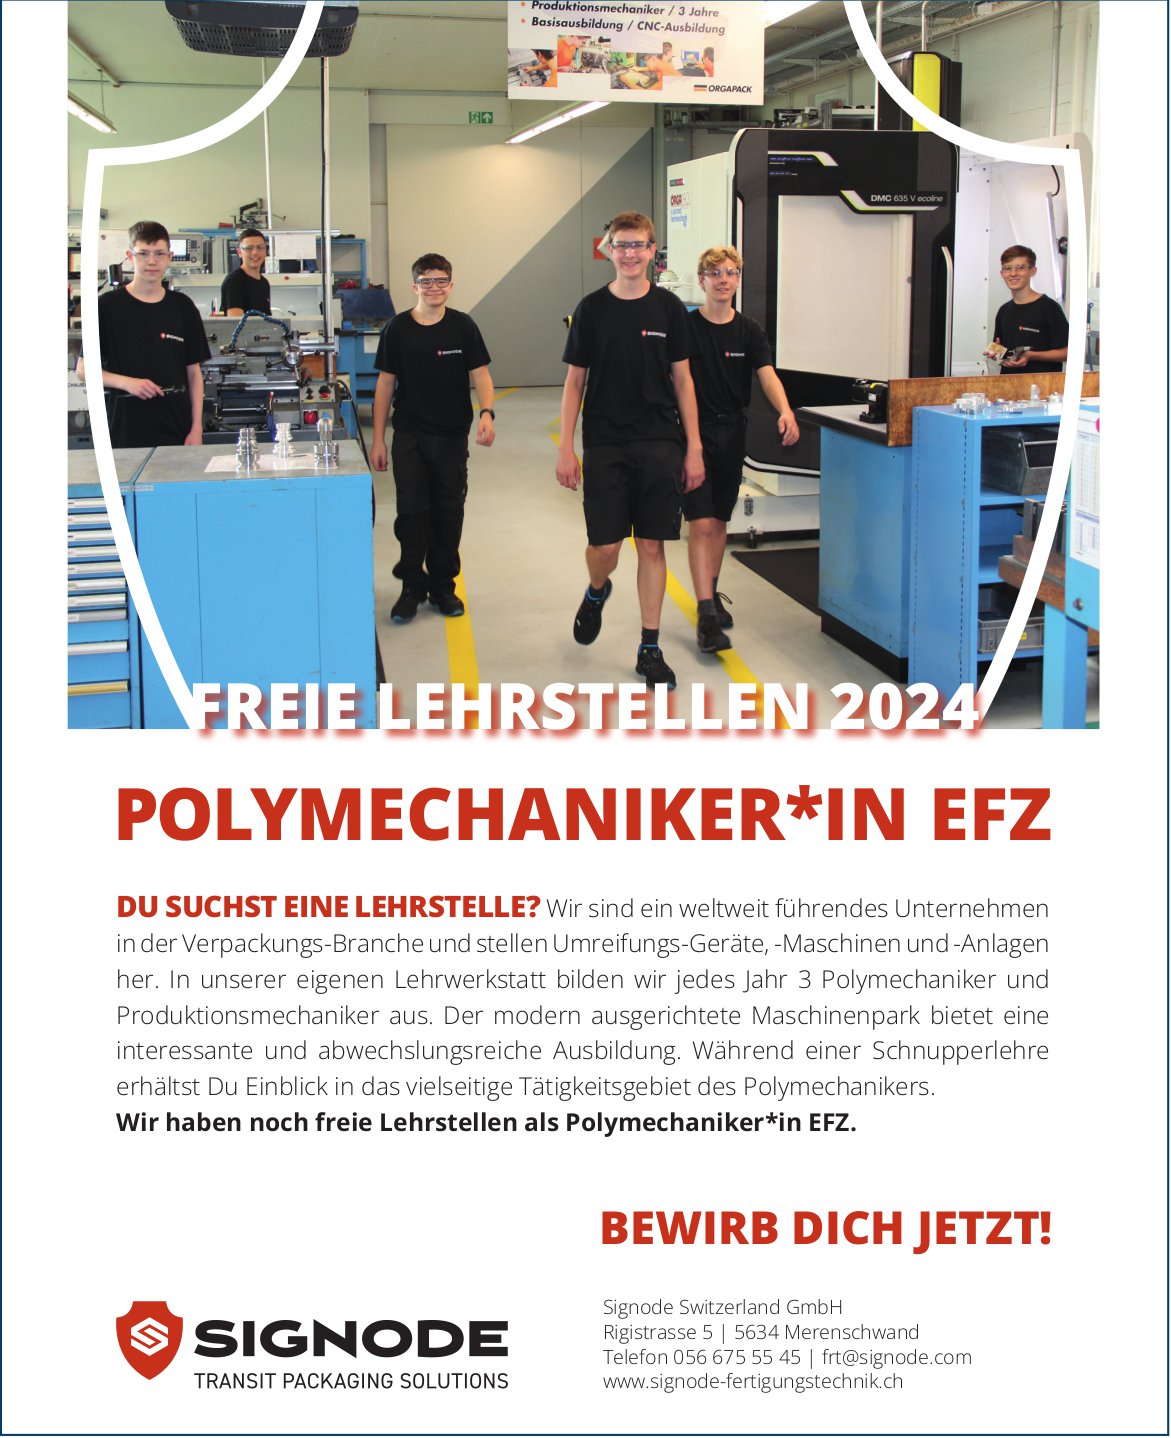 Signode Switzerland GmbH, Merenschwand - Freie Lehrstellen als Polymechaniker*in EFZ